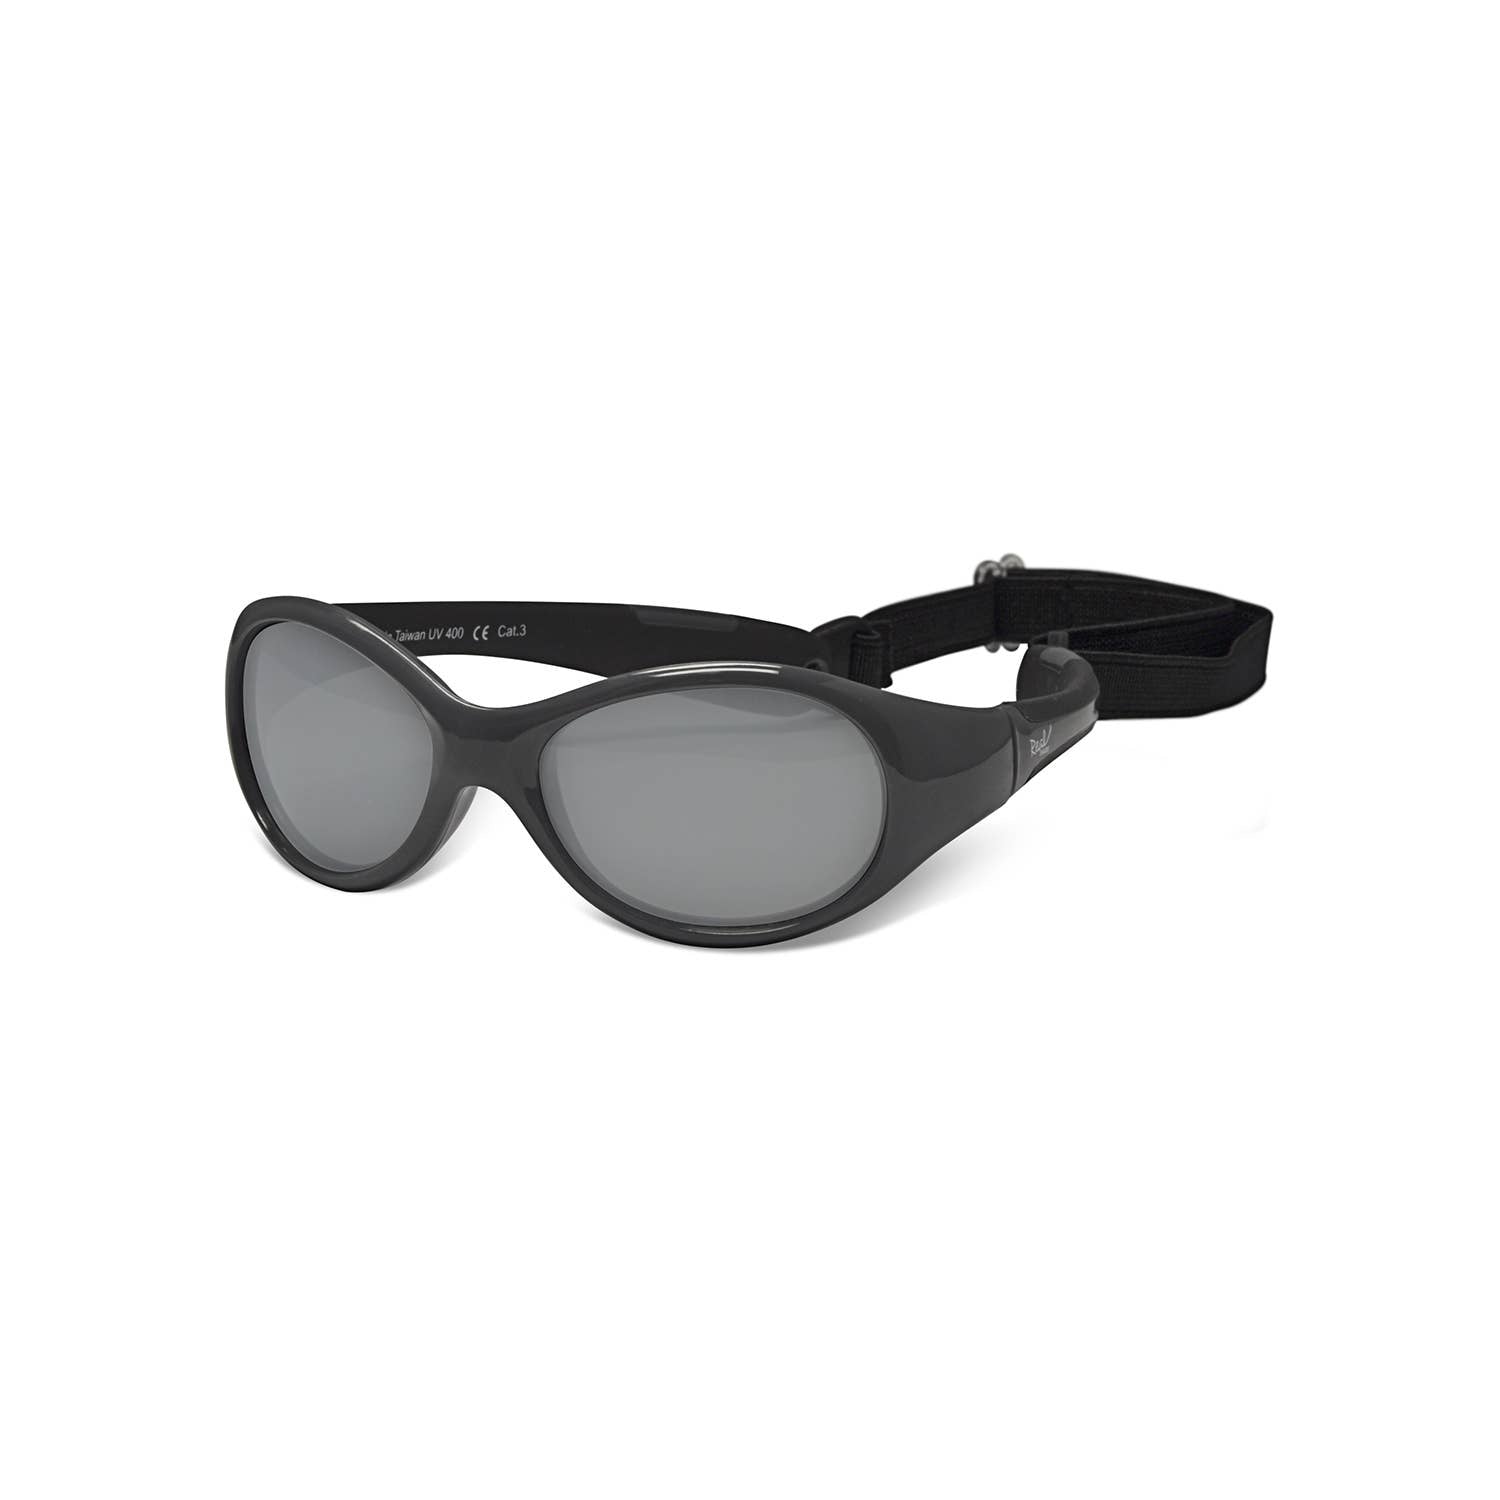 Explorer Flexible Frame Sunglasses for Toddlers 2+: Blue/Light Blue